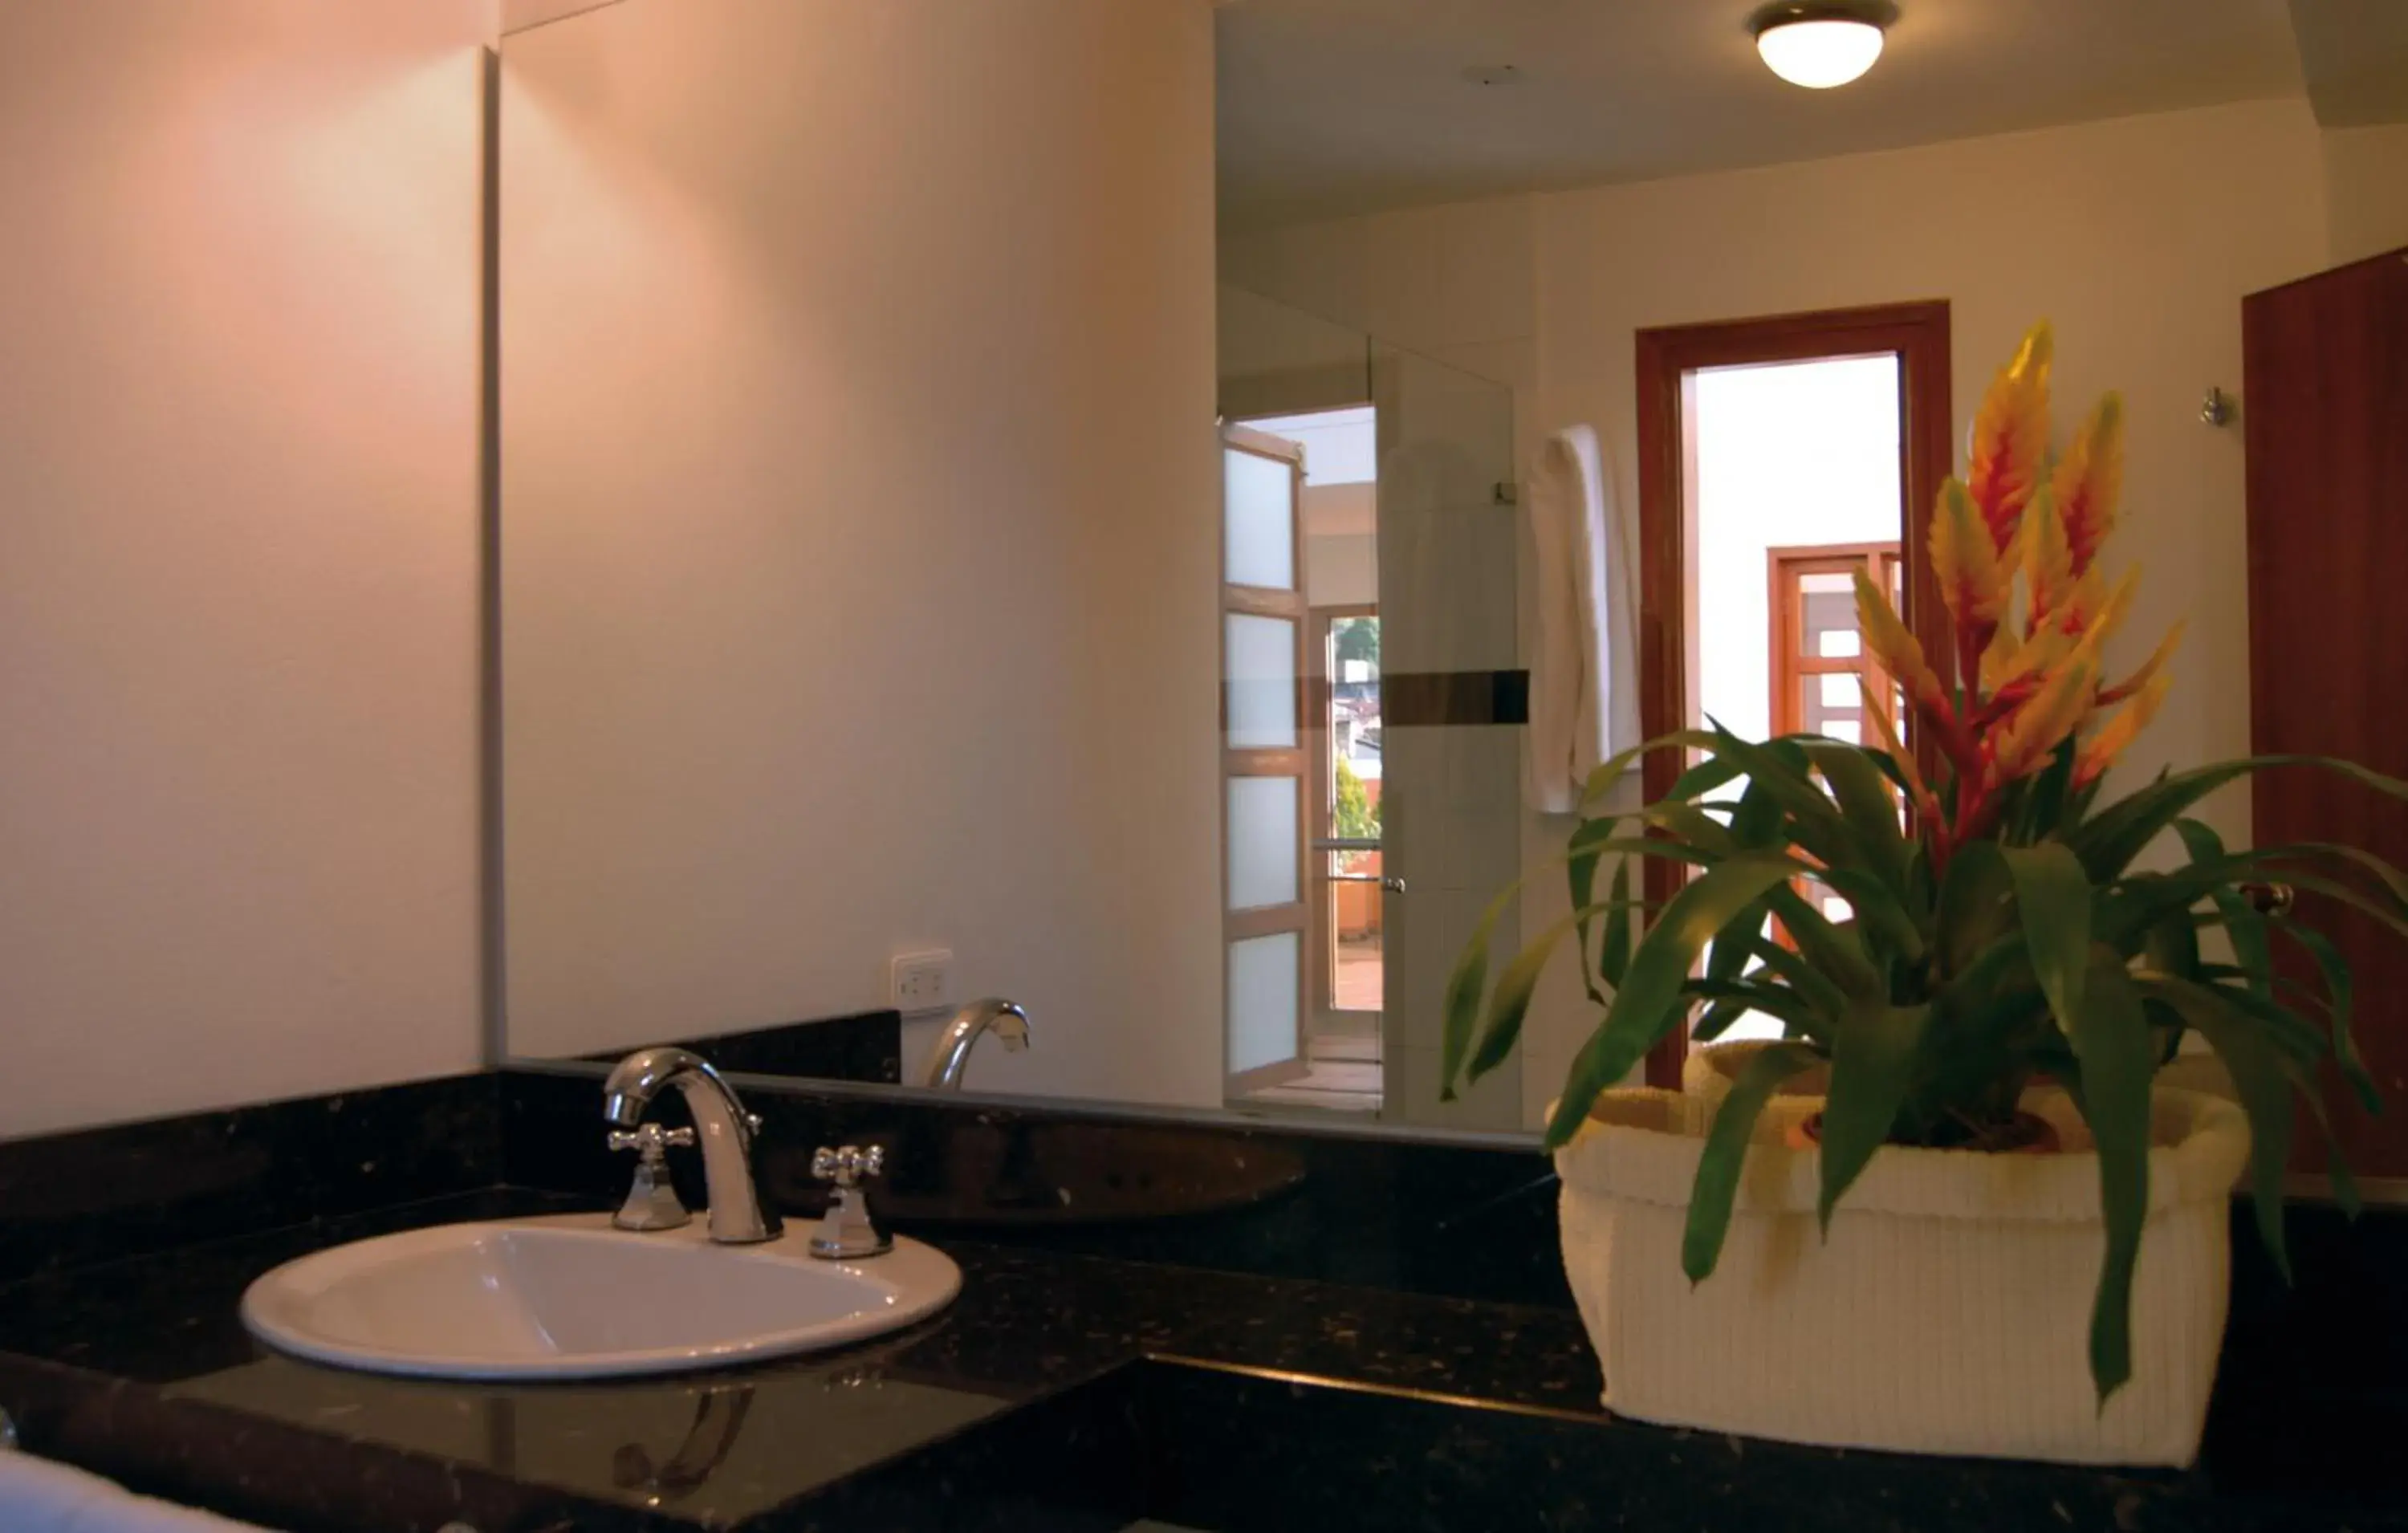 Decorative detail, Bathroom in Hotel Casa Deco